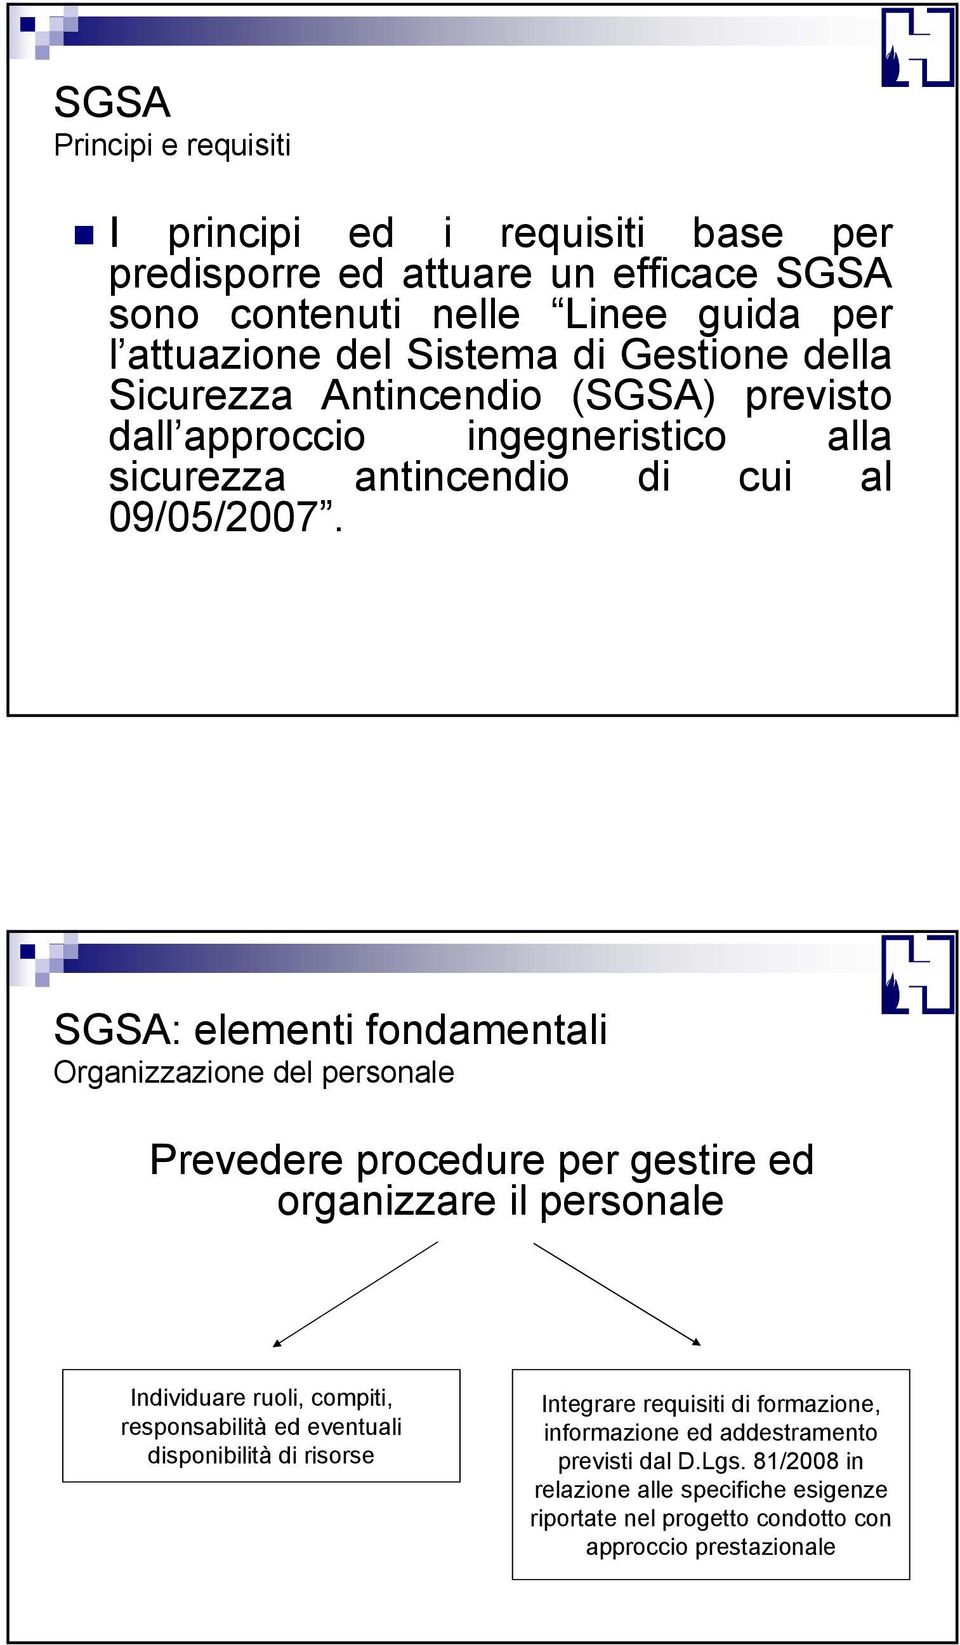 SGSA: elementi fondamentali Organizzazione del personale Prevedere procedure per gestire ed organizzare il personale Individuare ruoli, compiti, responsabilità ed